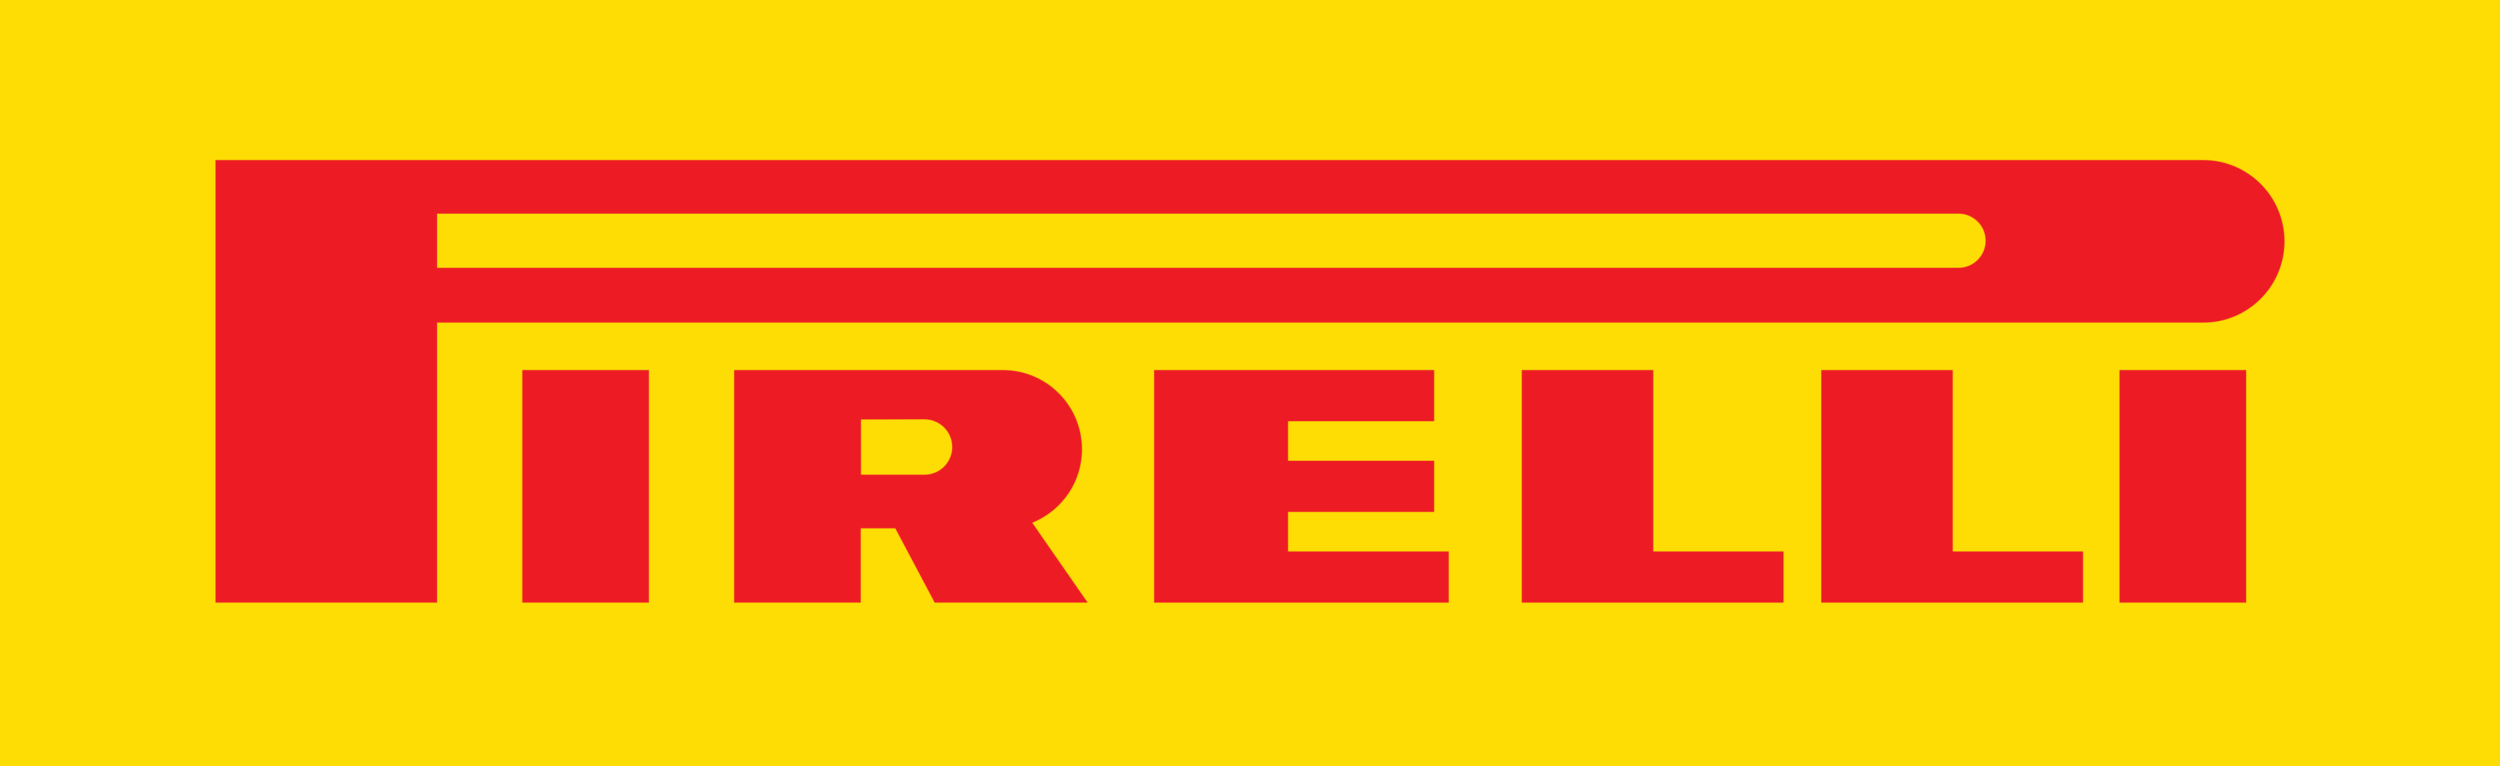 pirelli-logo (1).png